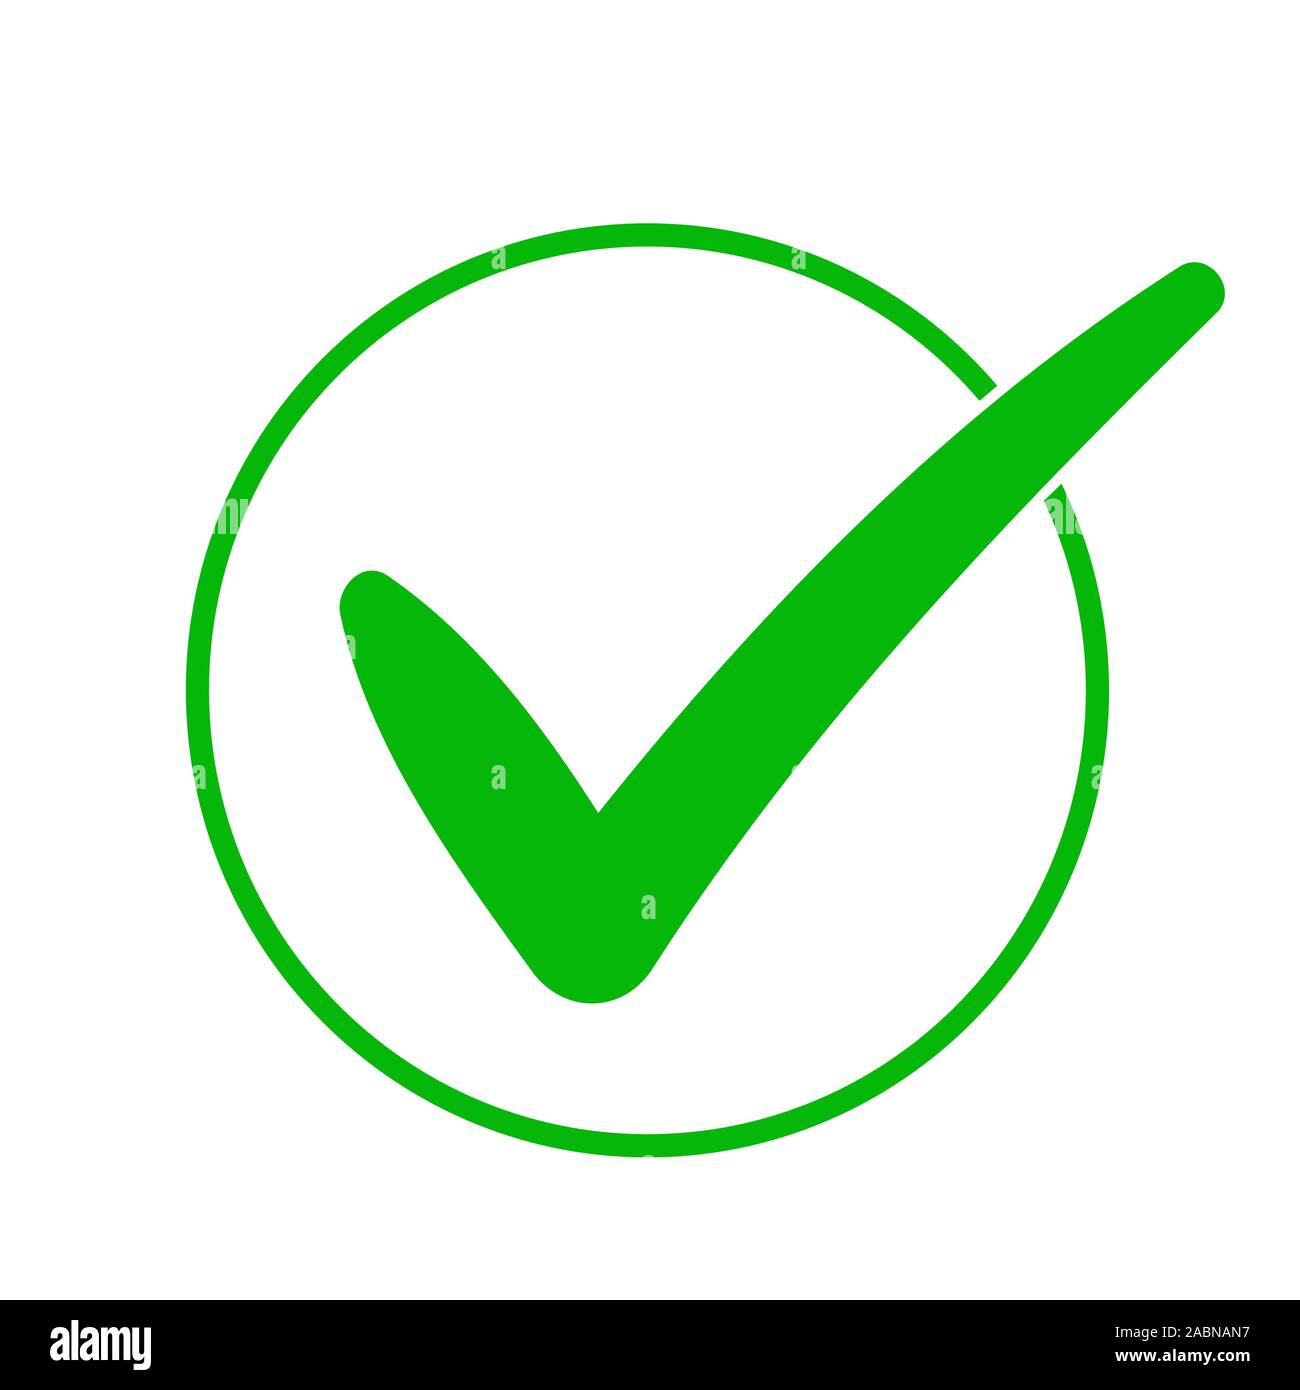 Icona segno di spunta verde in un cerchio. Segno di spunta di colore verde. Illustrazione Vettoriale